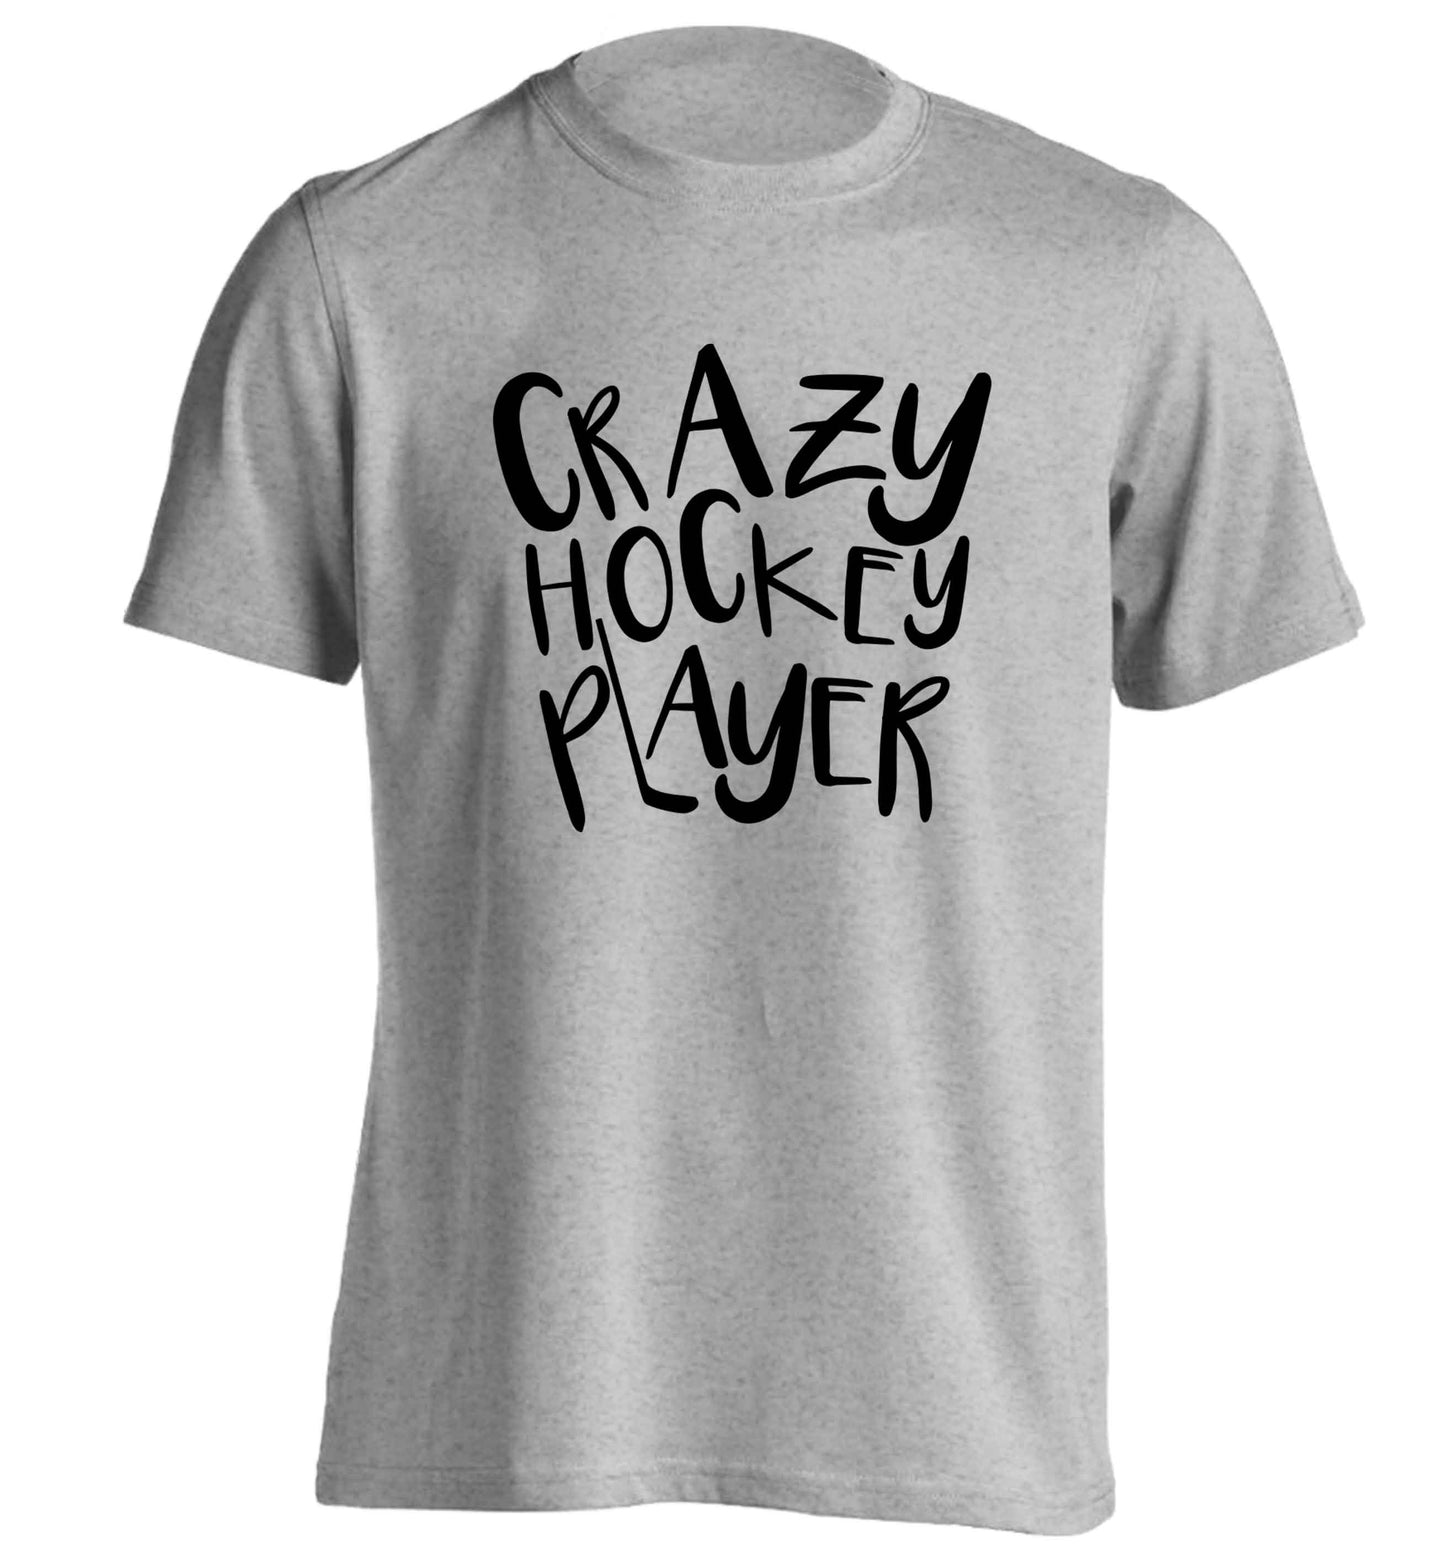 Crazy hockey player adults unisex grey Tshirt 2XL